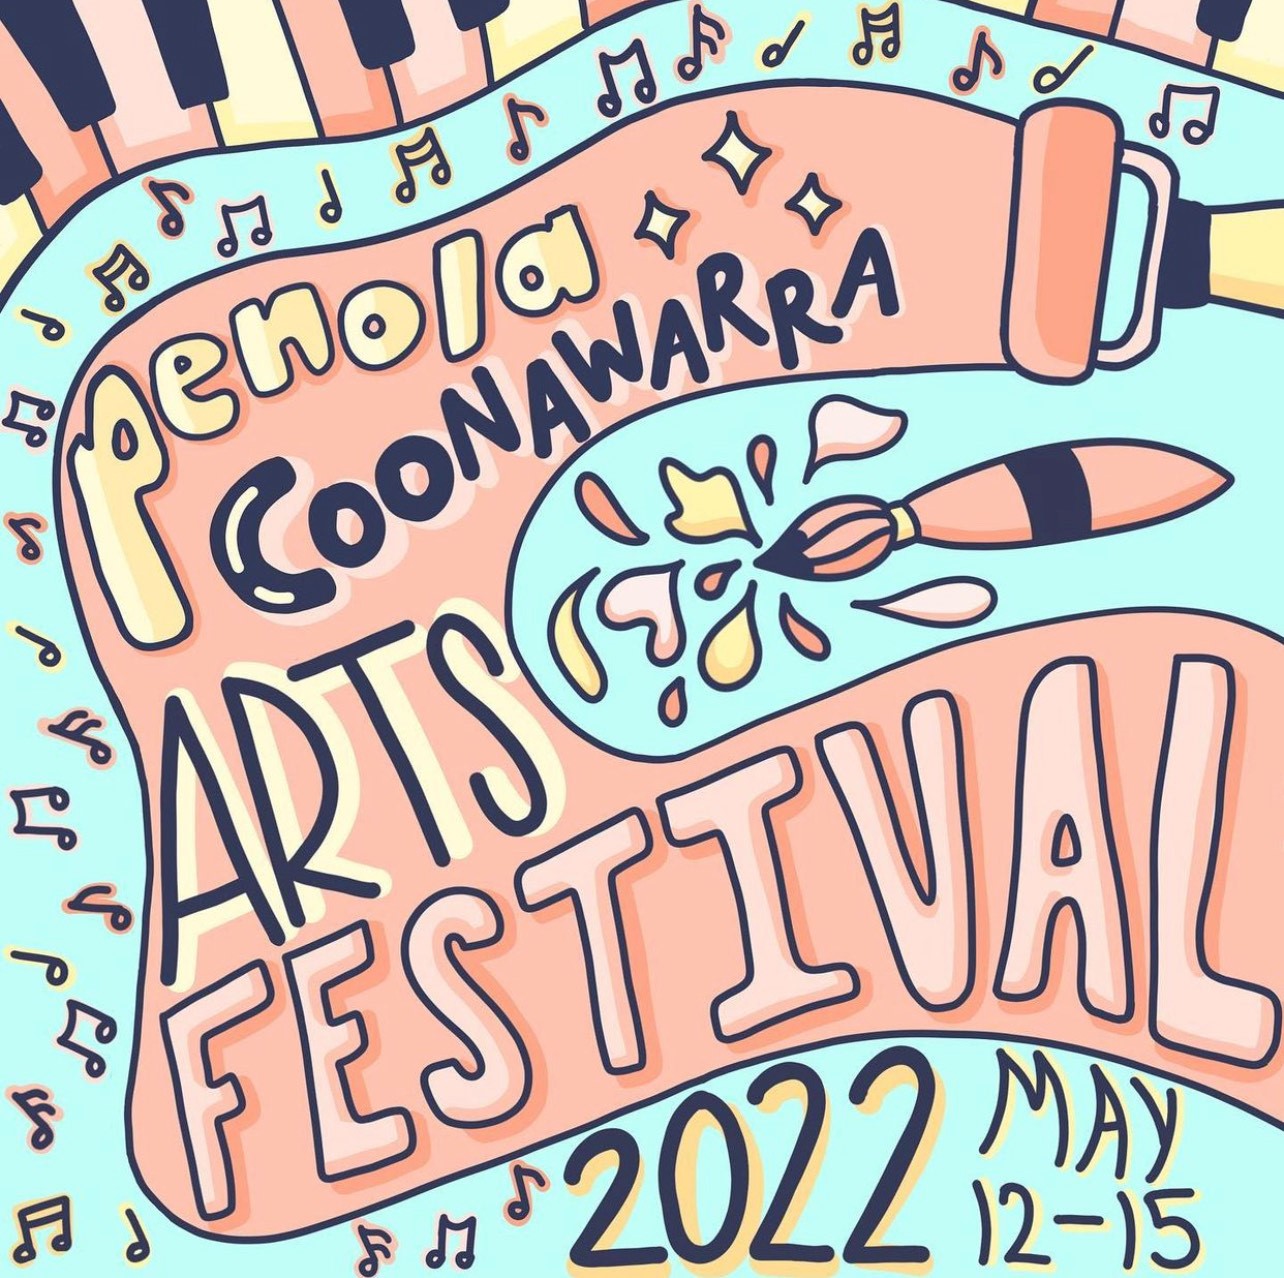 Penola Coonawarra Arts Festival Coonawarra Vignerons 